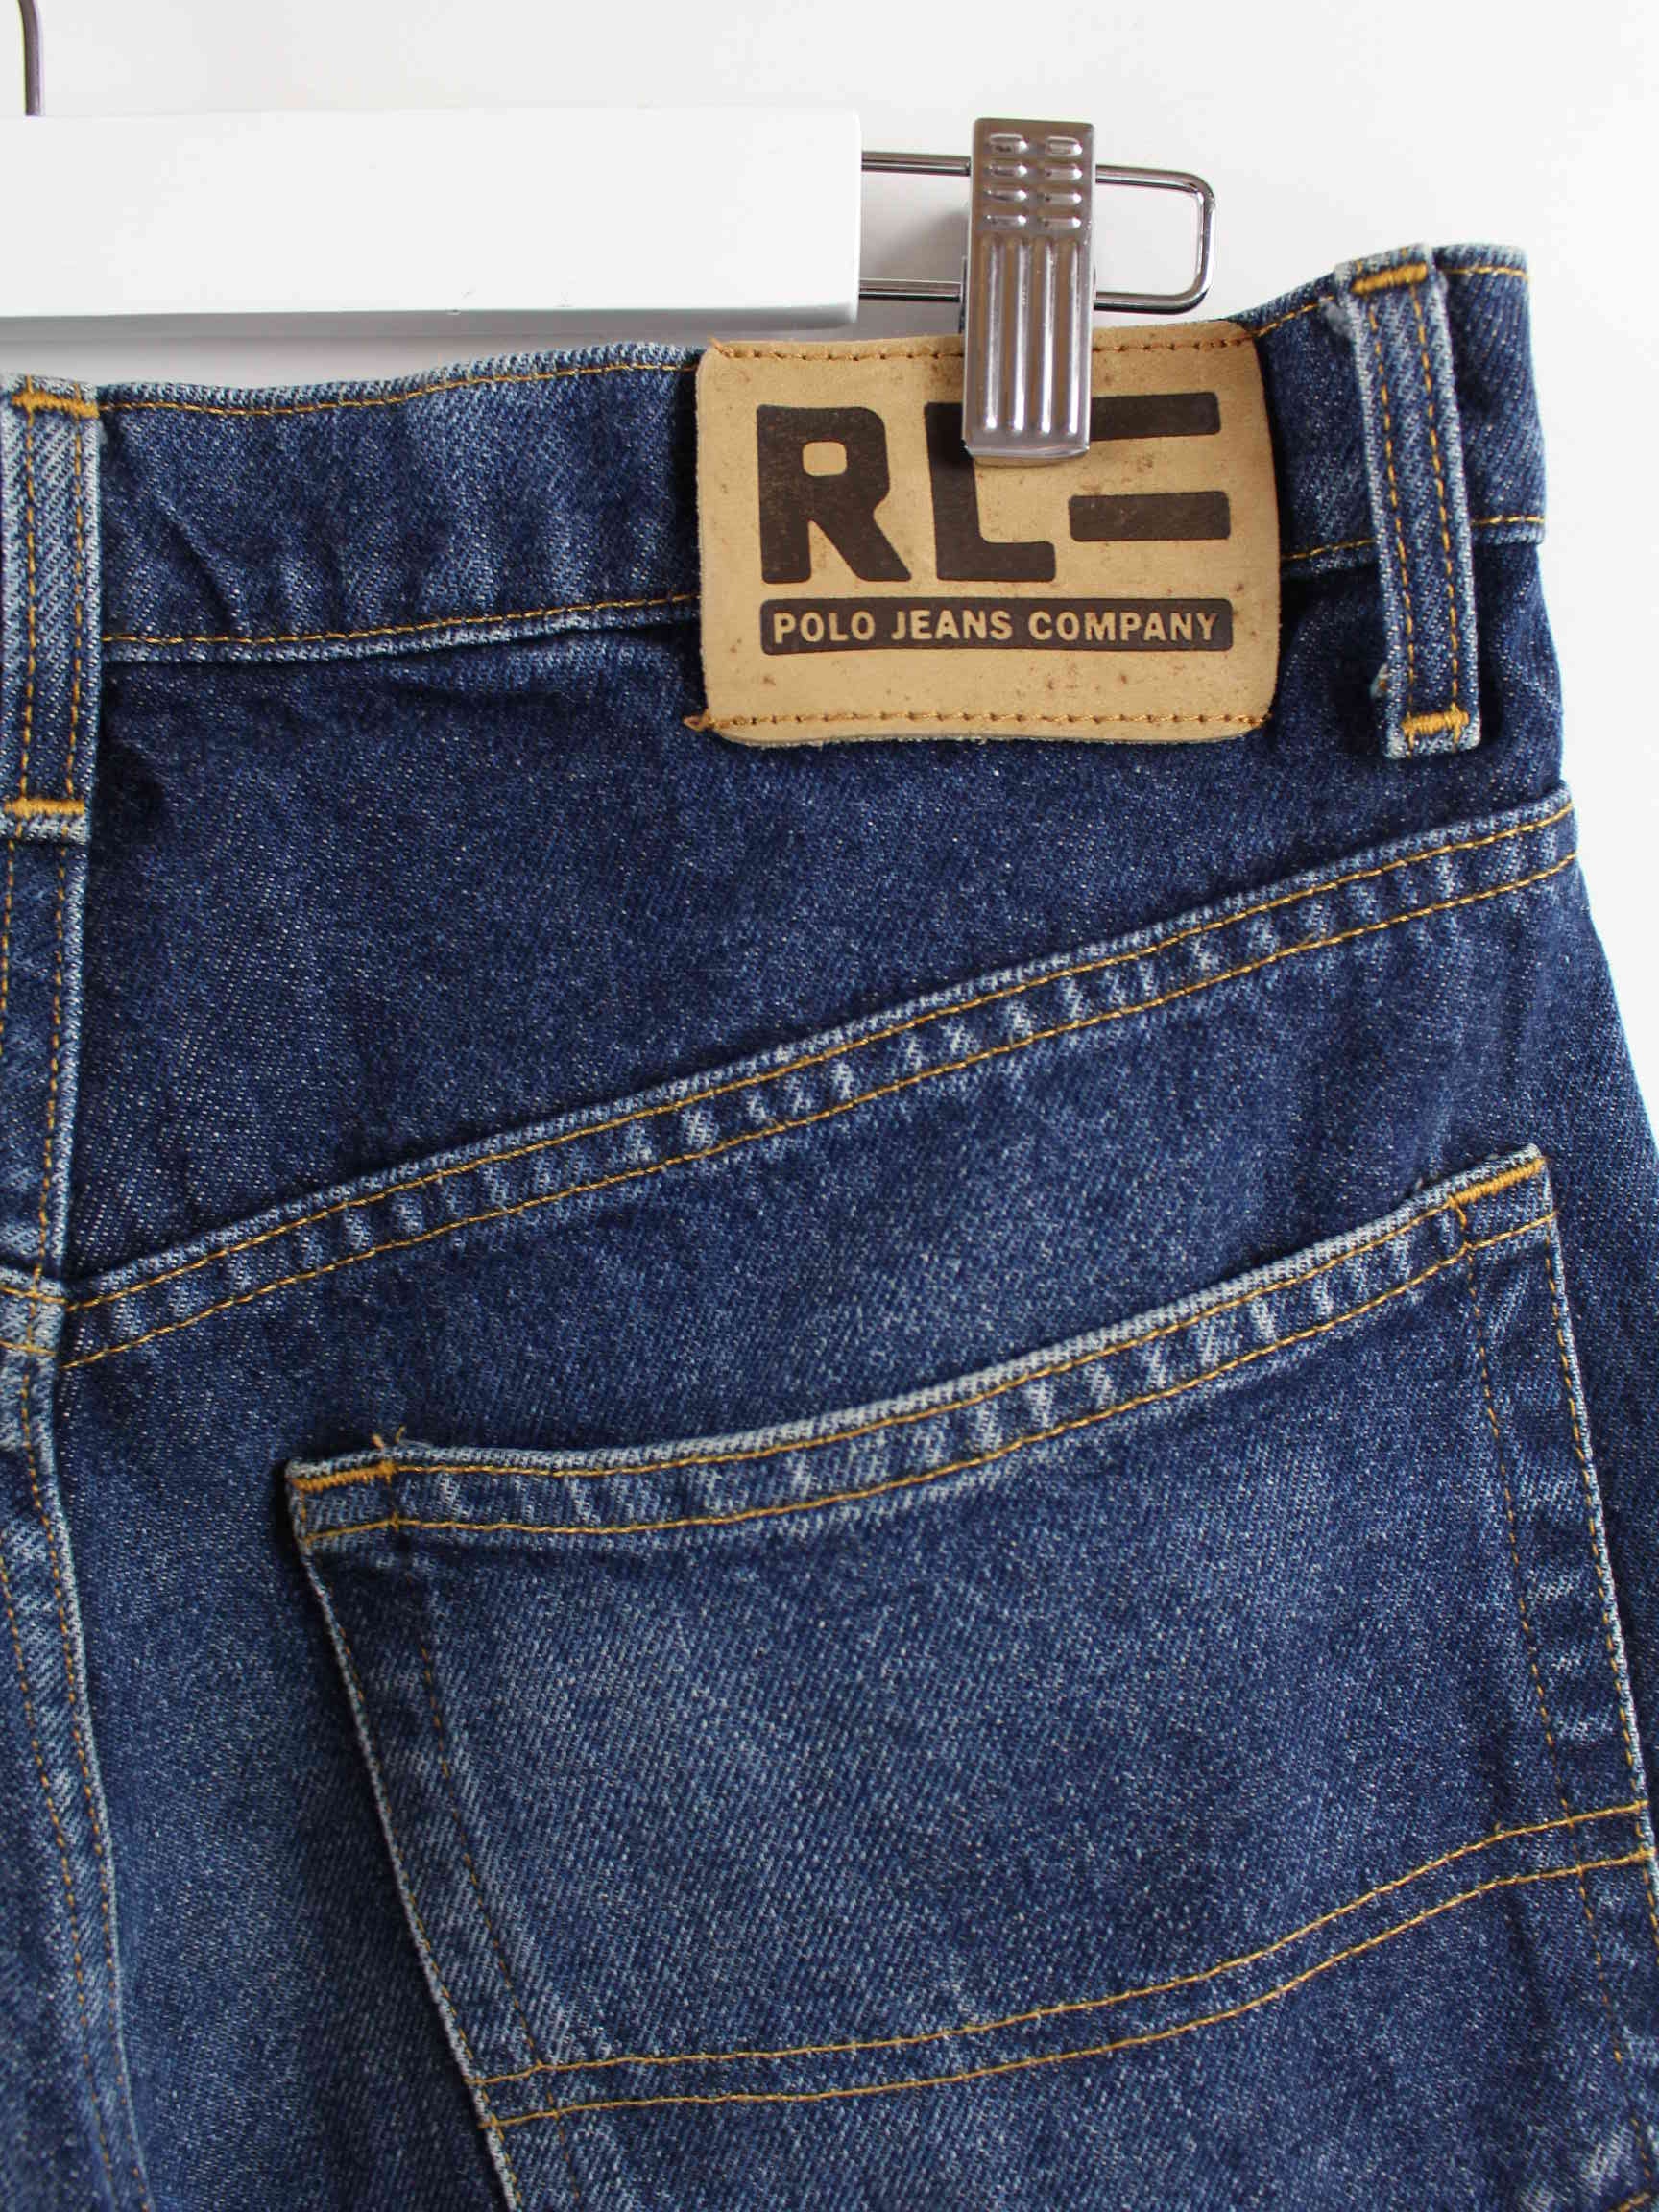 Ralph Lauren Polo Jeans Blau W32 L28 (detail image 1)